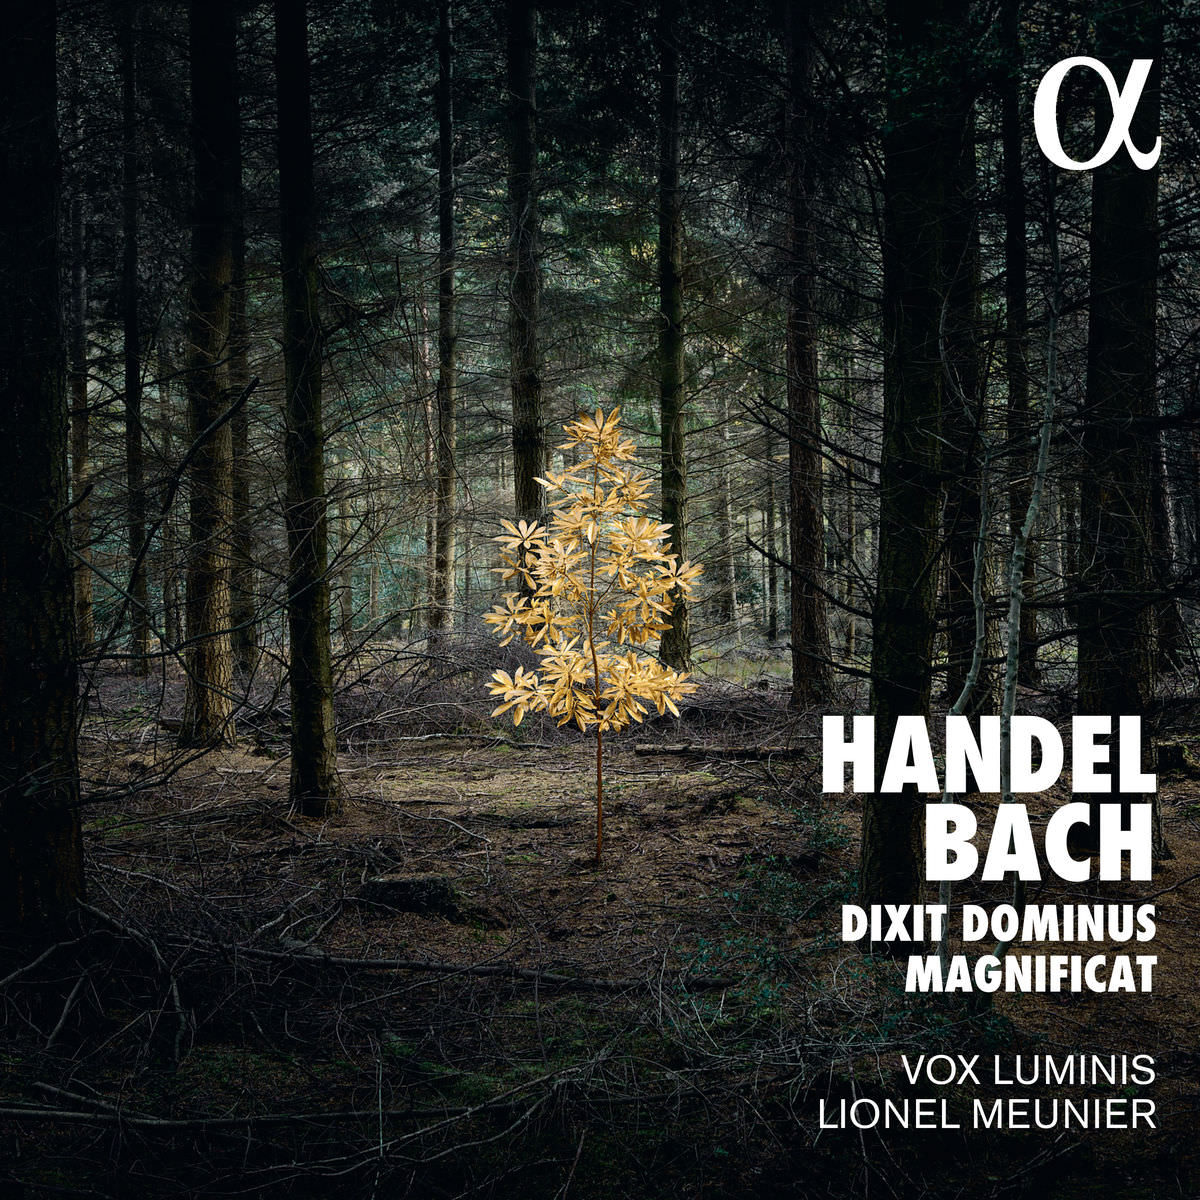 Vox Luminis & Lionel Meunier - Bach: Magnificat - Handel: Dixit Dominus (2017) [Qobuz FLAC 24bit/96kHz]